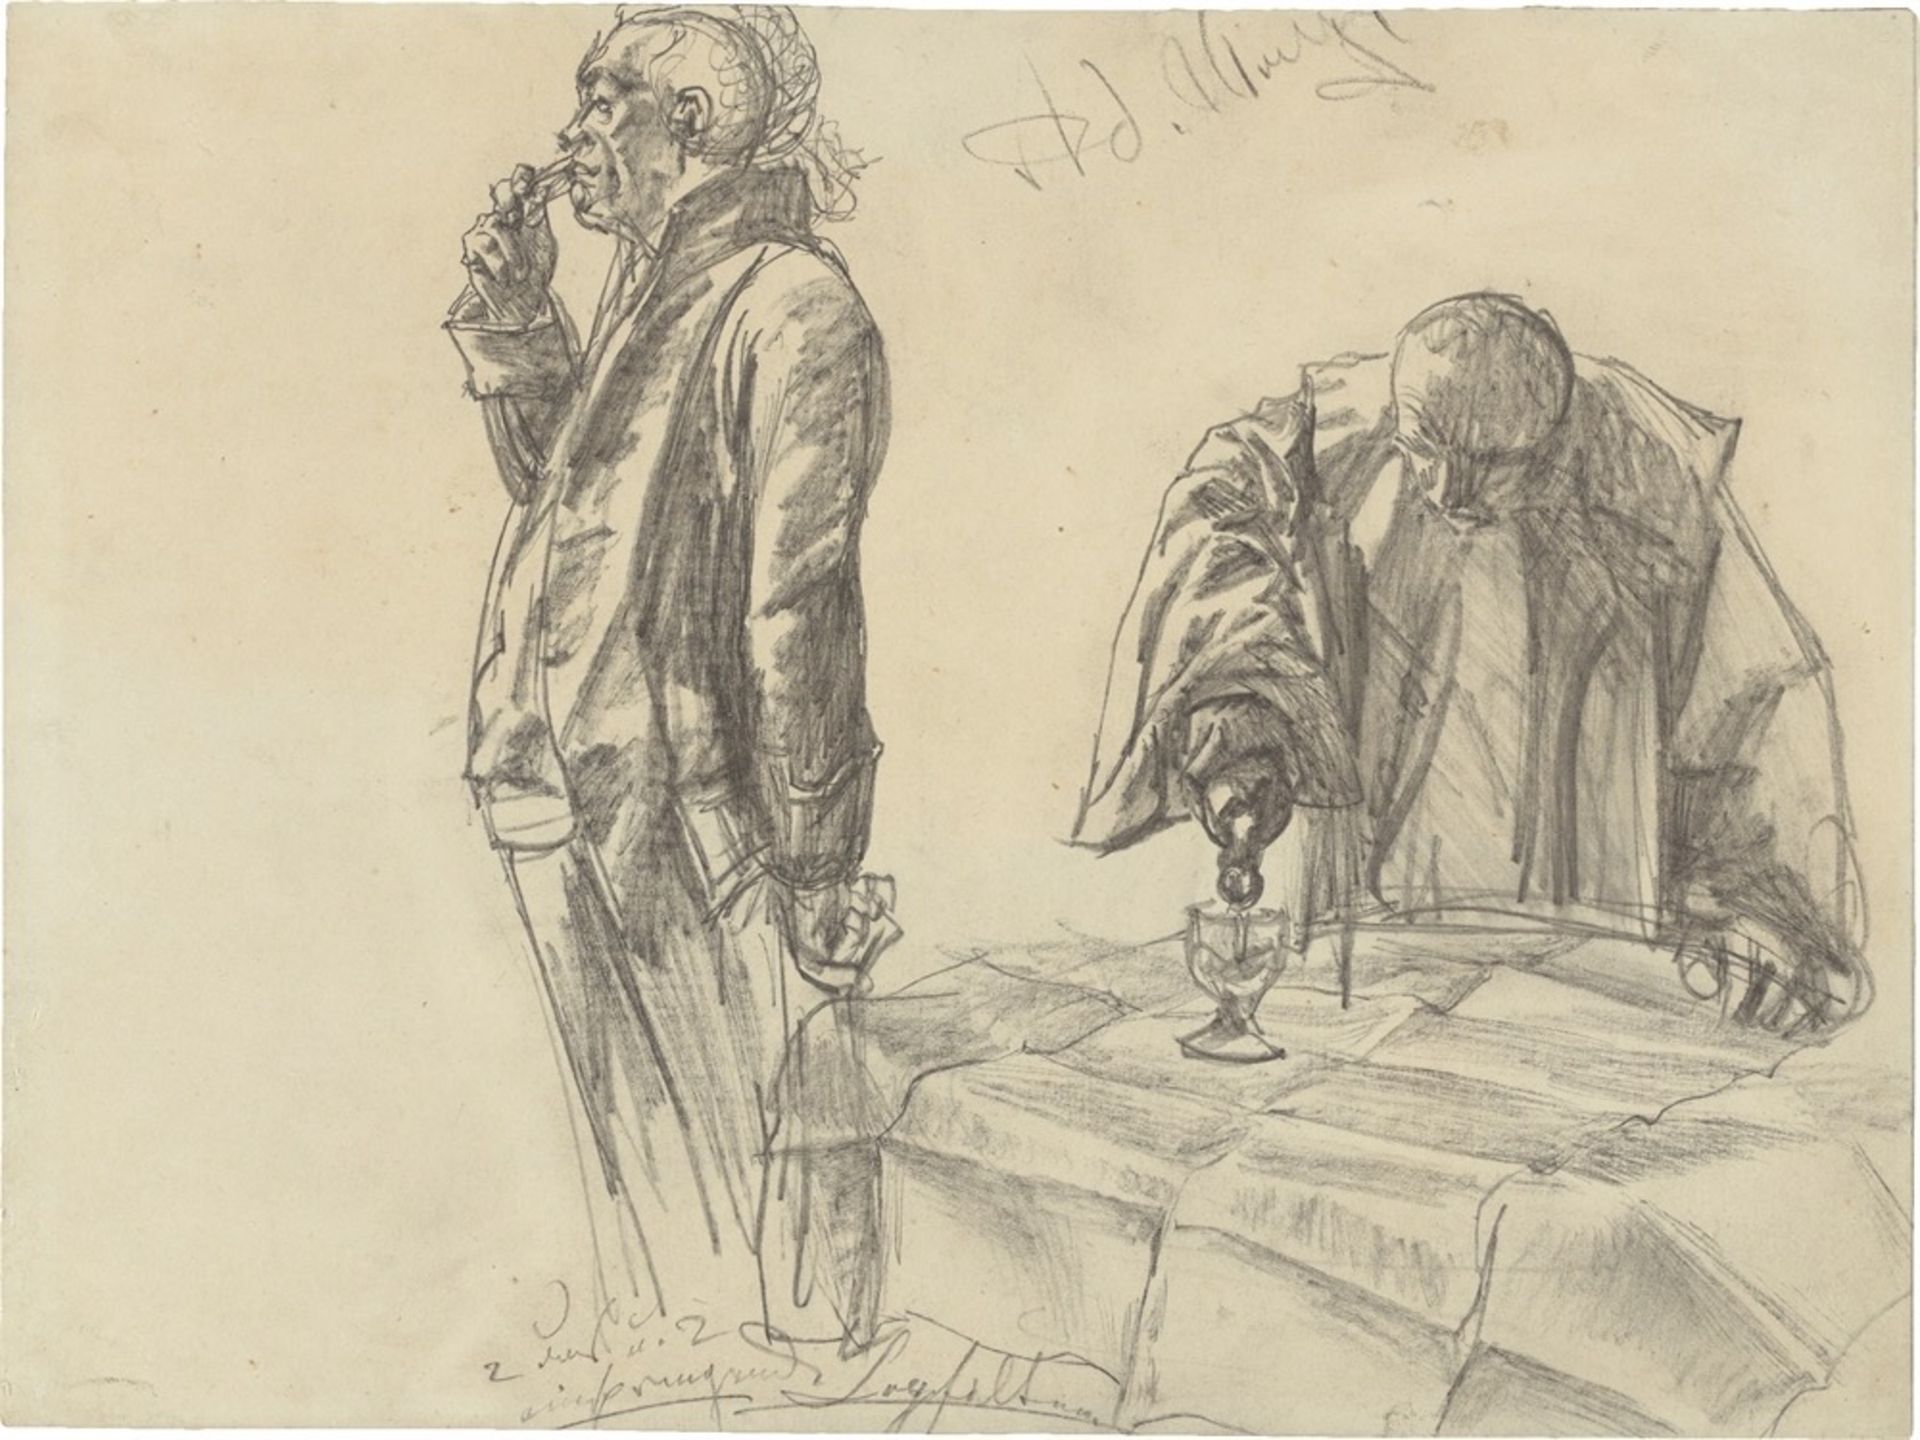 Adolph Menzel. Study on Heinrich von Kleist: "The Broken Jug". (before) 1877